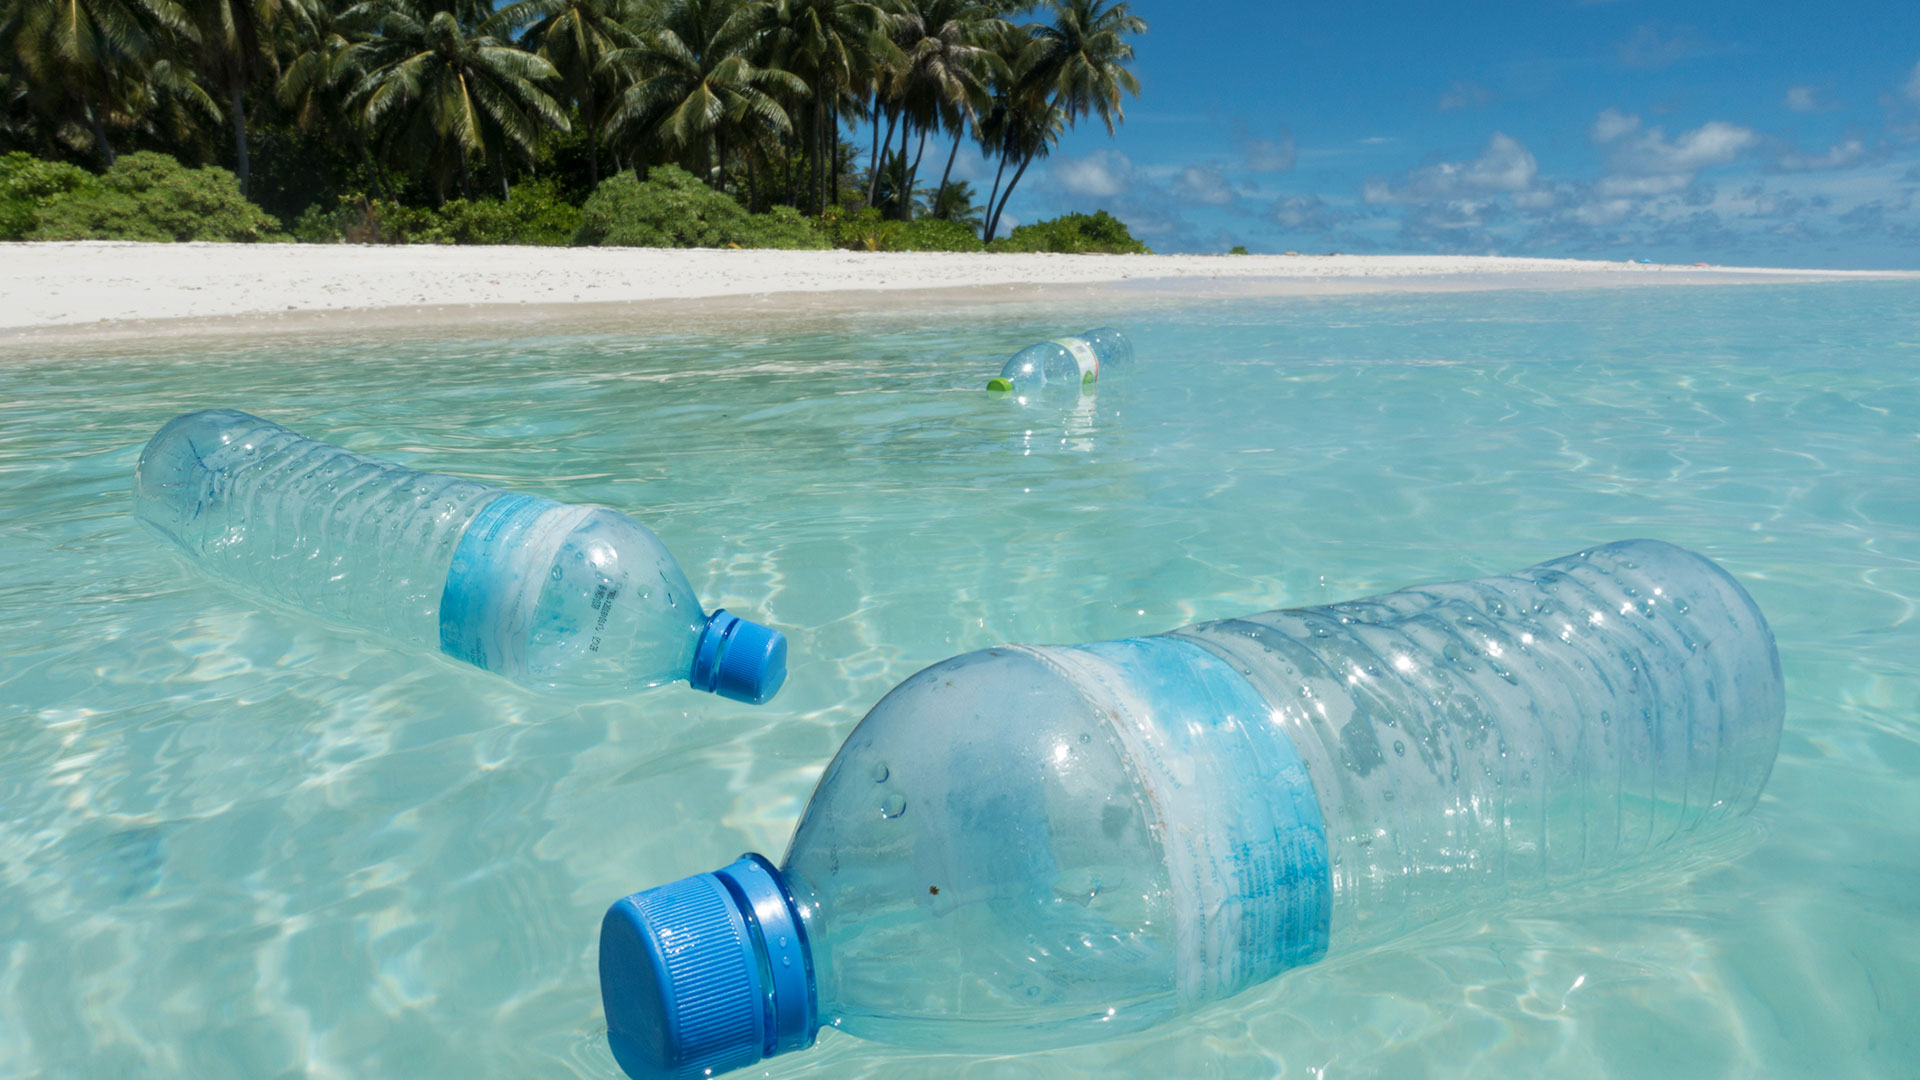 El plástico atenta también contra la vida marina (Gettyimages)